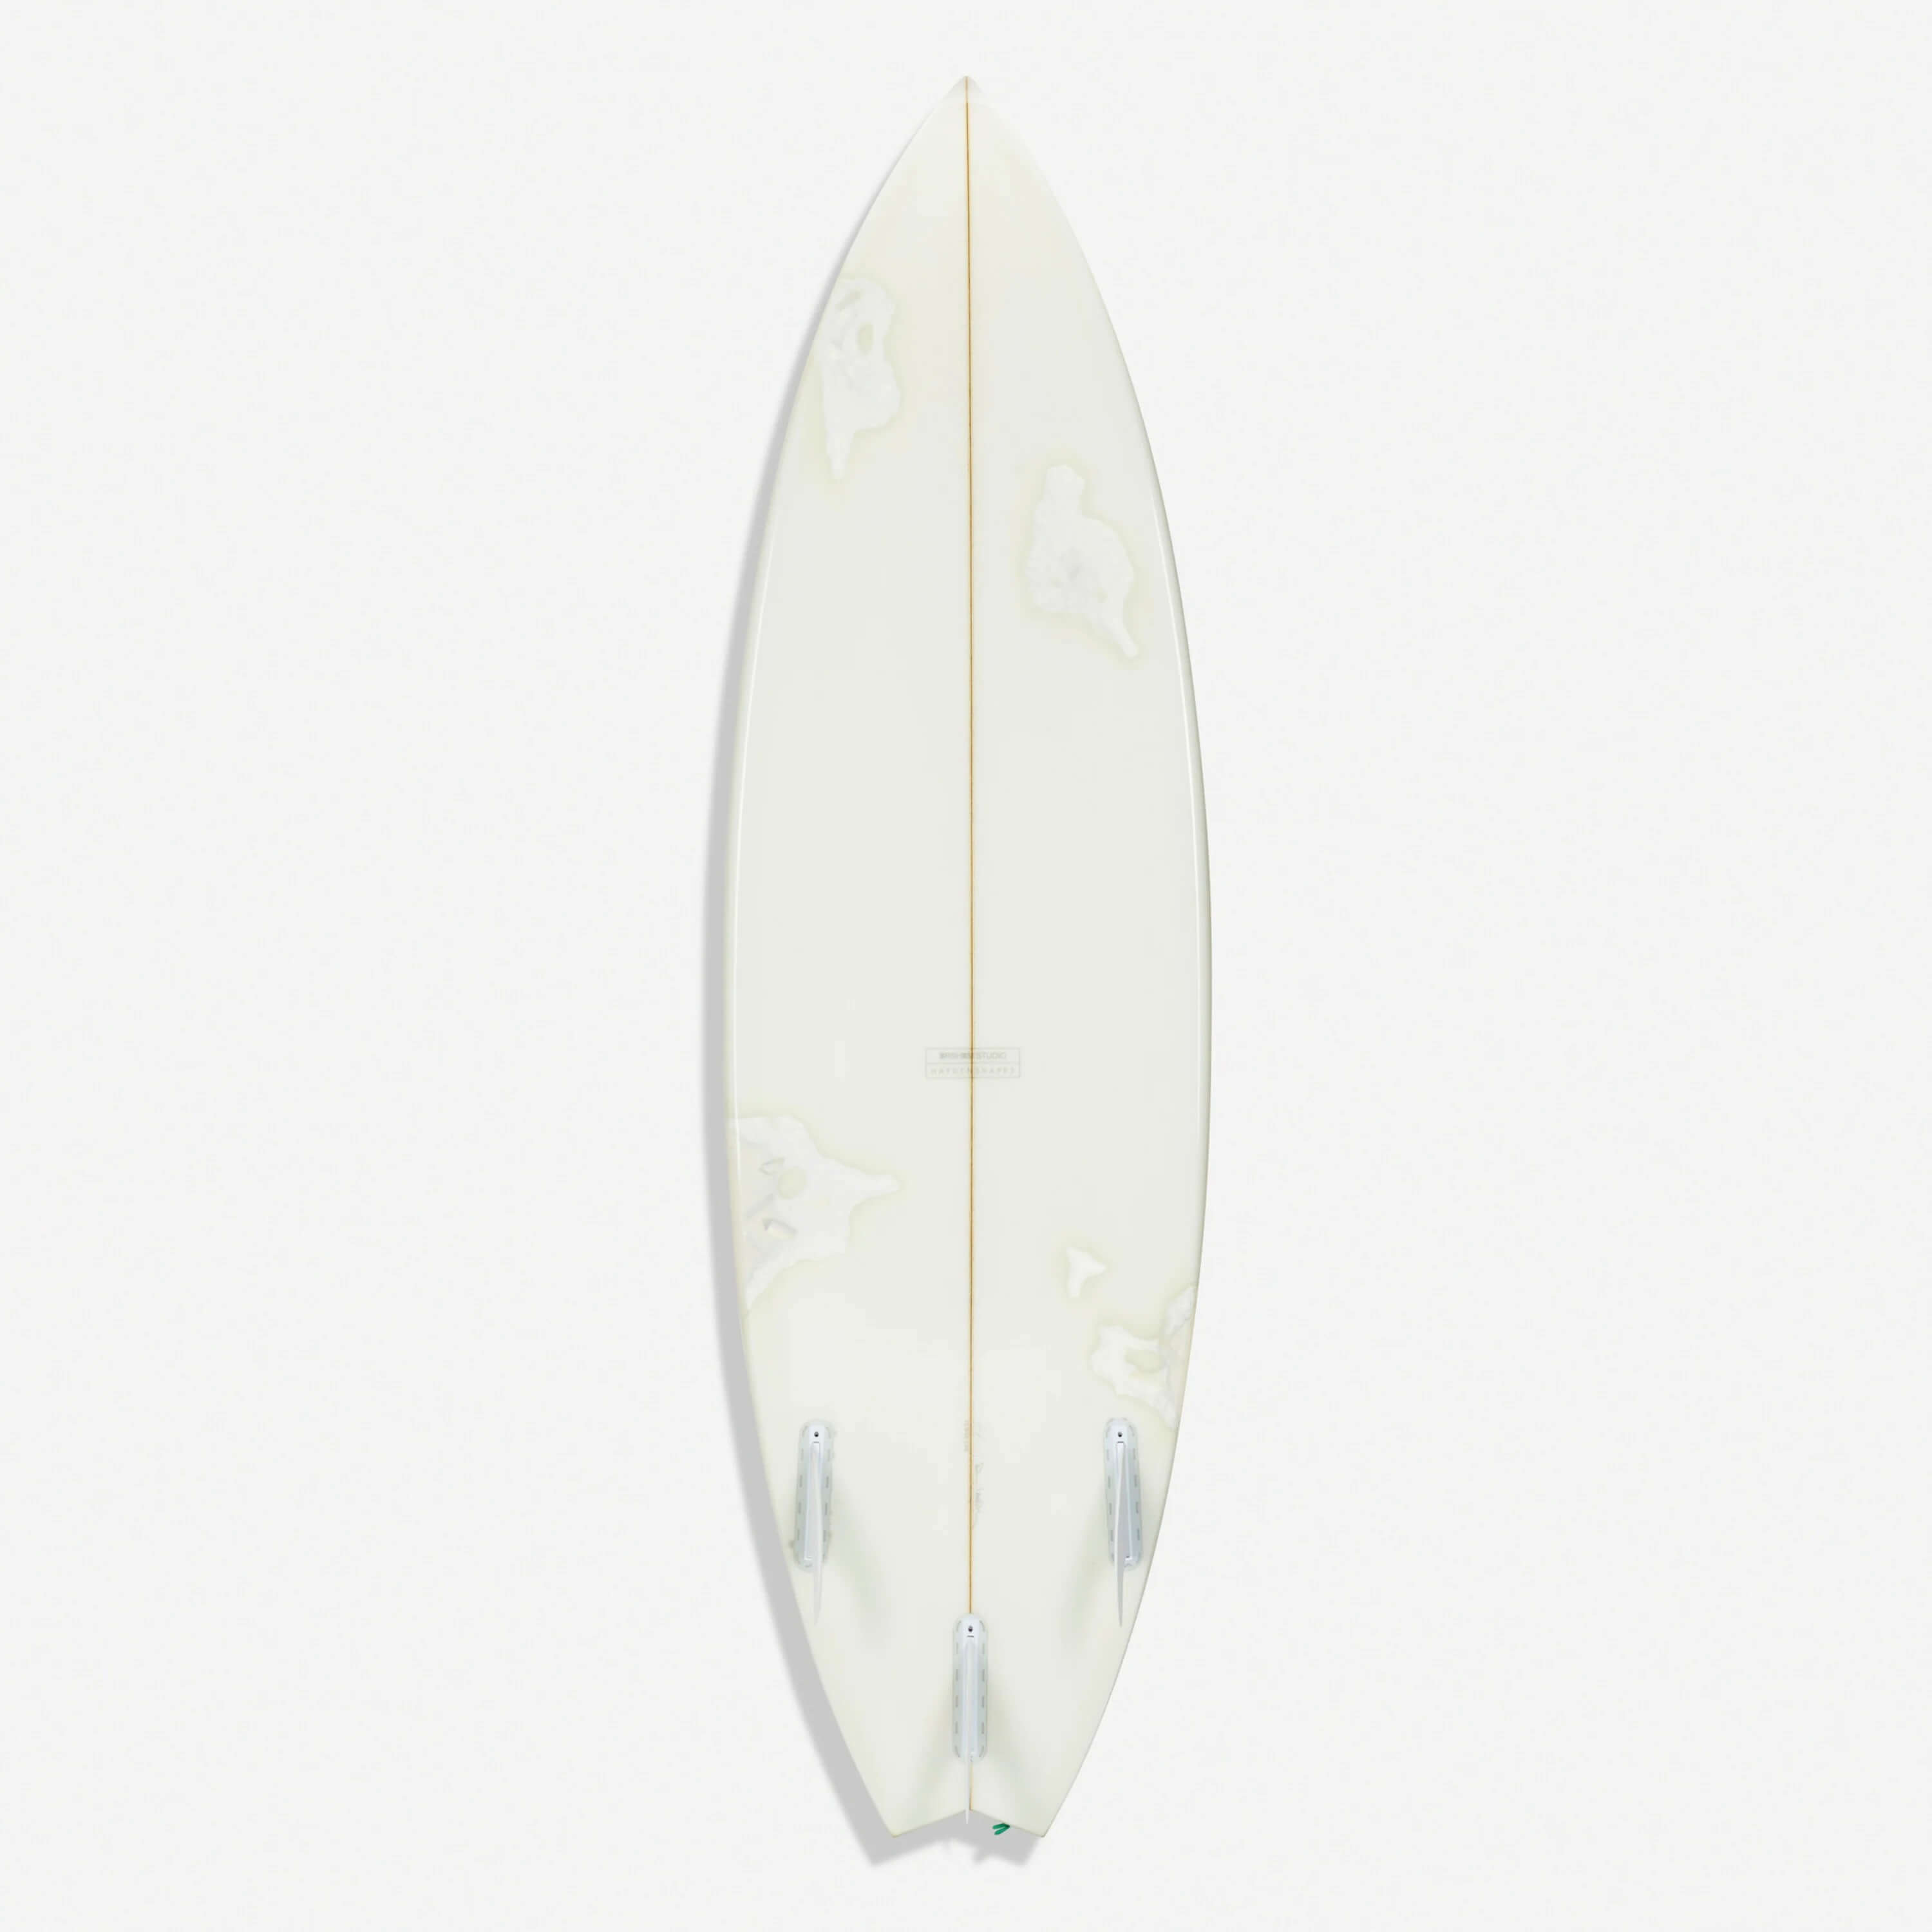 Скульптура Daniel Arsham Eroded Surfboard Figure плавник для серфинга длиной 9 дюймов плавник для серфинга черного цвета